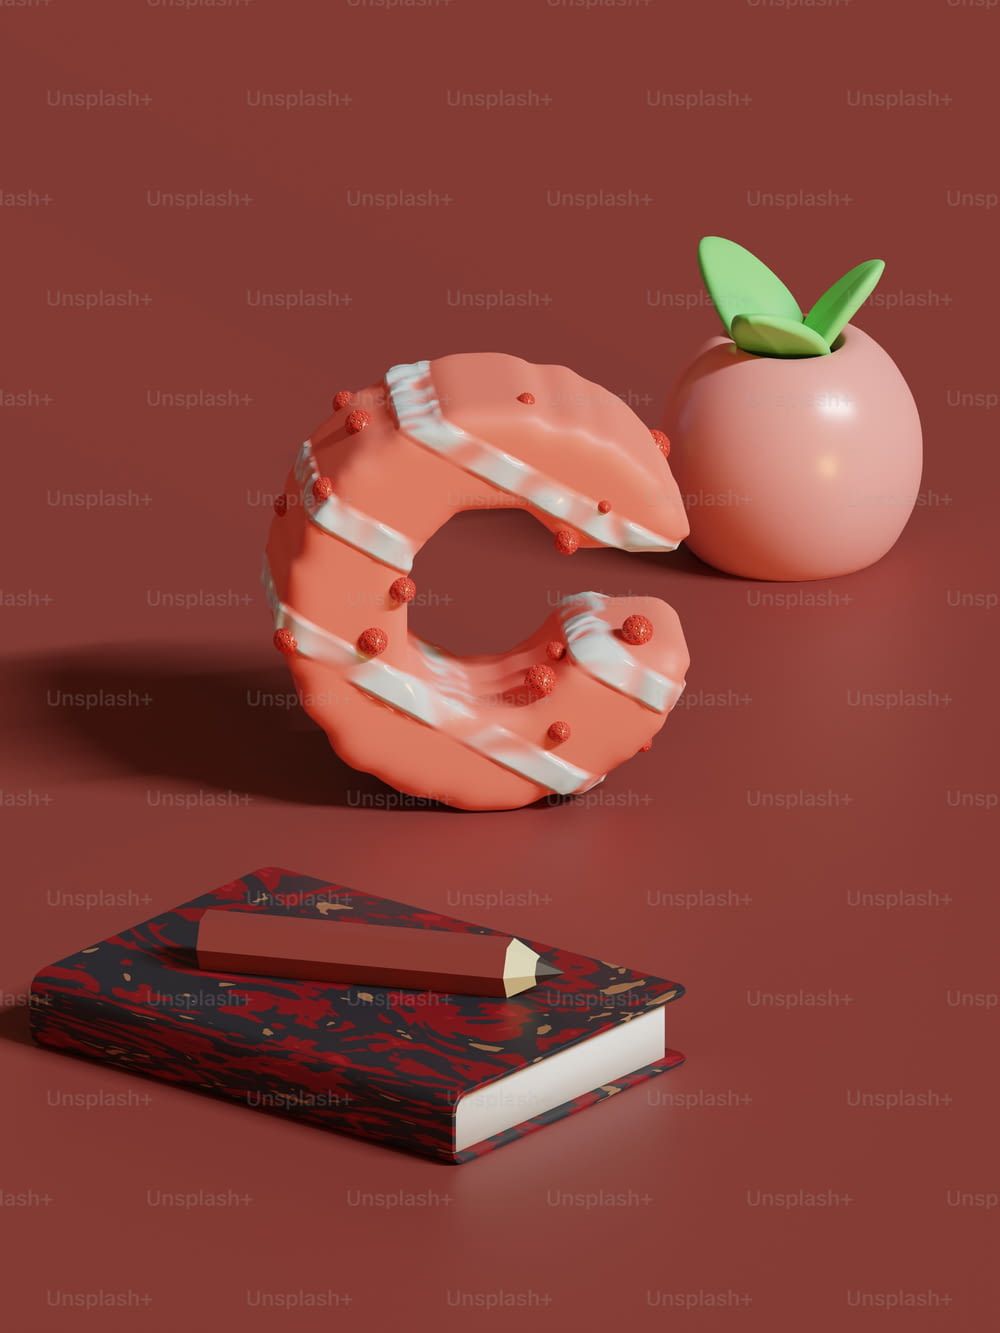 Un libro y una pieza de fruta en una mesa